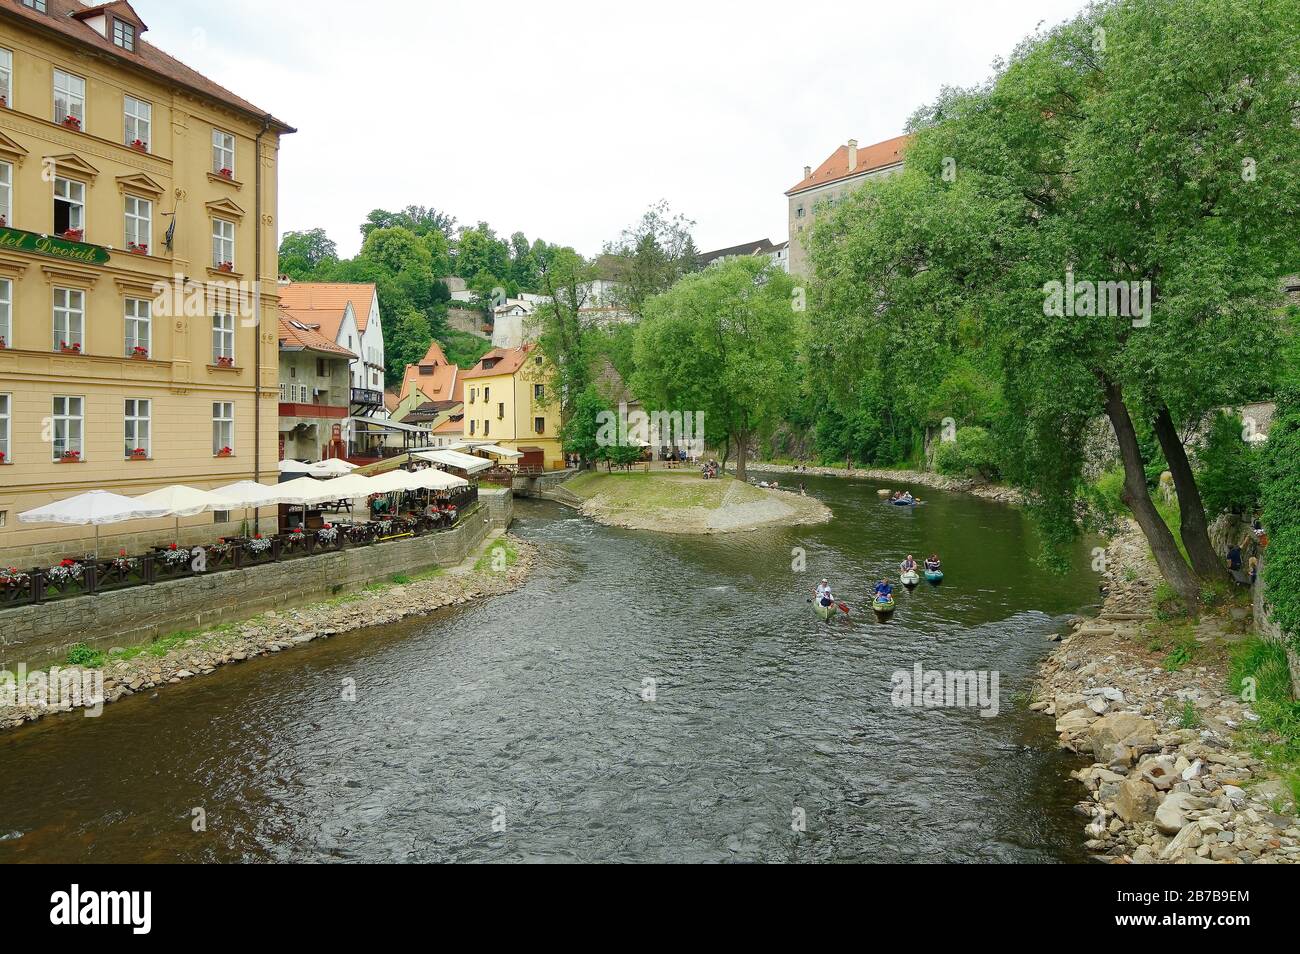 Ist eine Stadt in der südböhmischen Region in Tschechien. Das historische Zentrum, das sich um die Burg Český Krumlov an der Moldau dreht Stockfoto